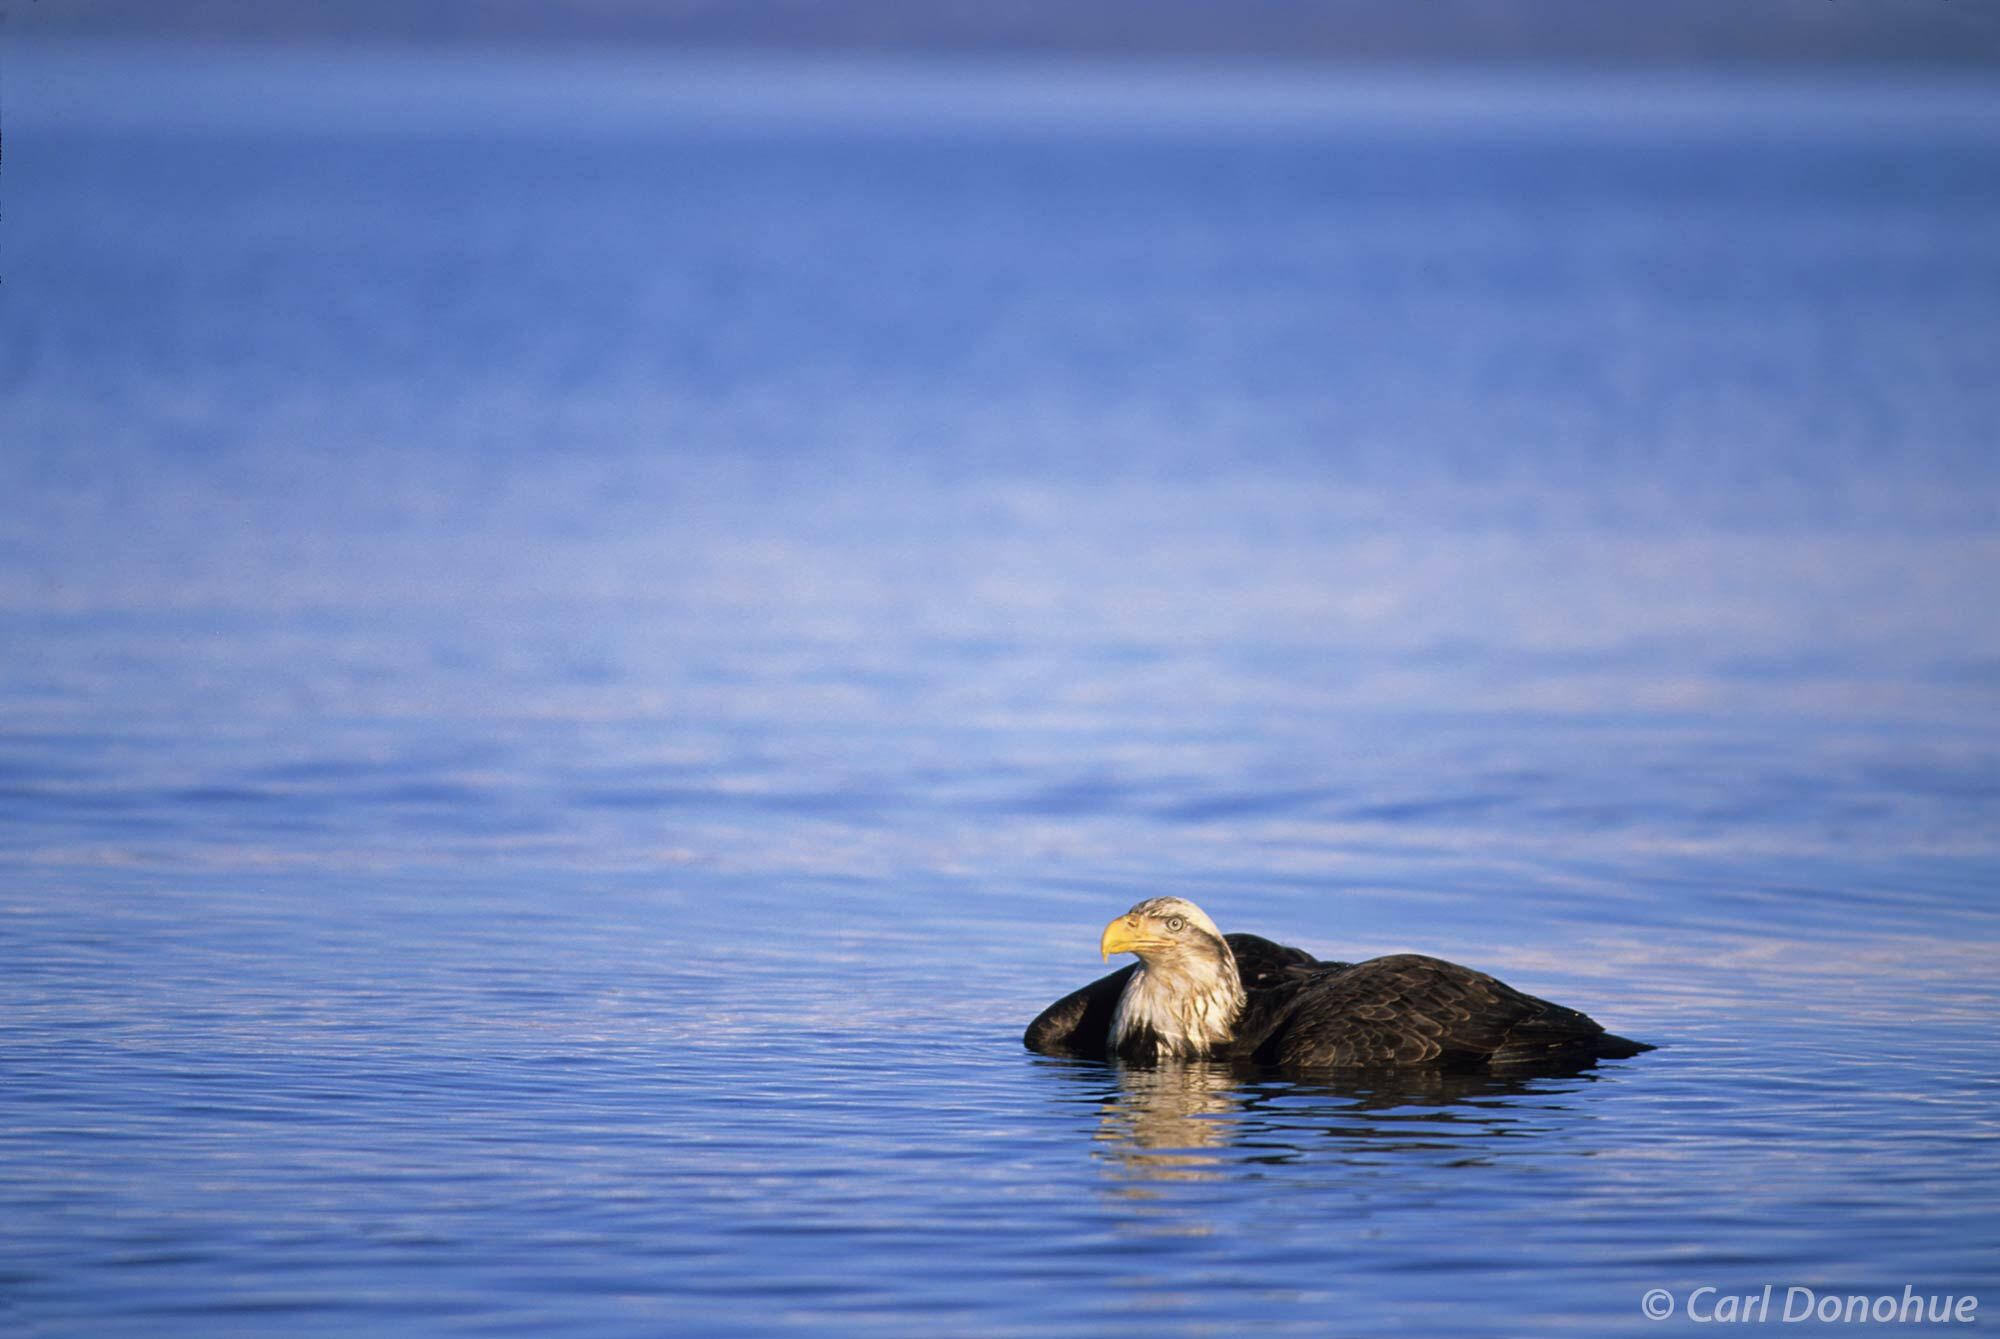 An adult bald eagle in the water, Kachemak Bay, near Homer, Alaska.  Bald eagle fishing in Kachemak Bay, near Homer, Alaska....